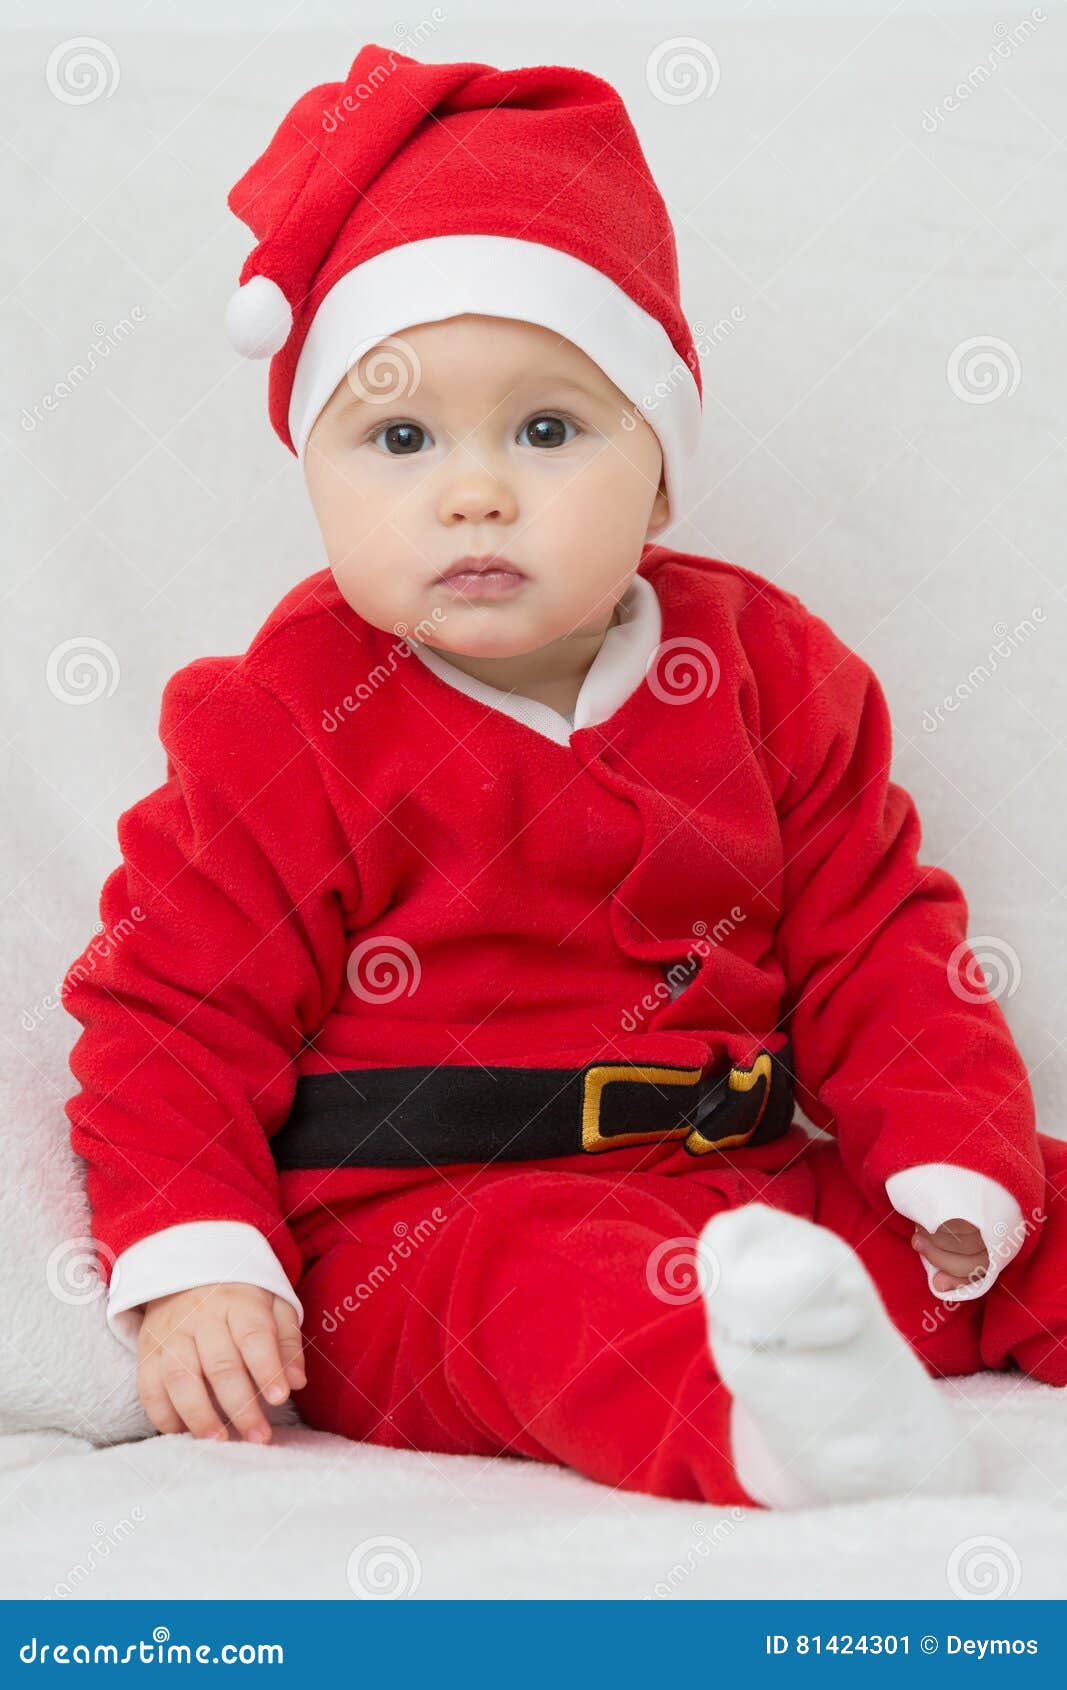 Siete Meses Del Bebé En El Vestido De Santa Claus Imagen de archivo -  Imagen de manos, adorable: 81424301